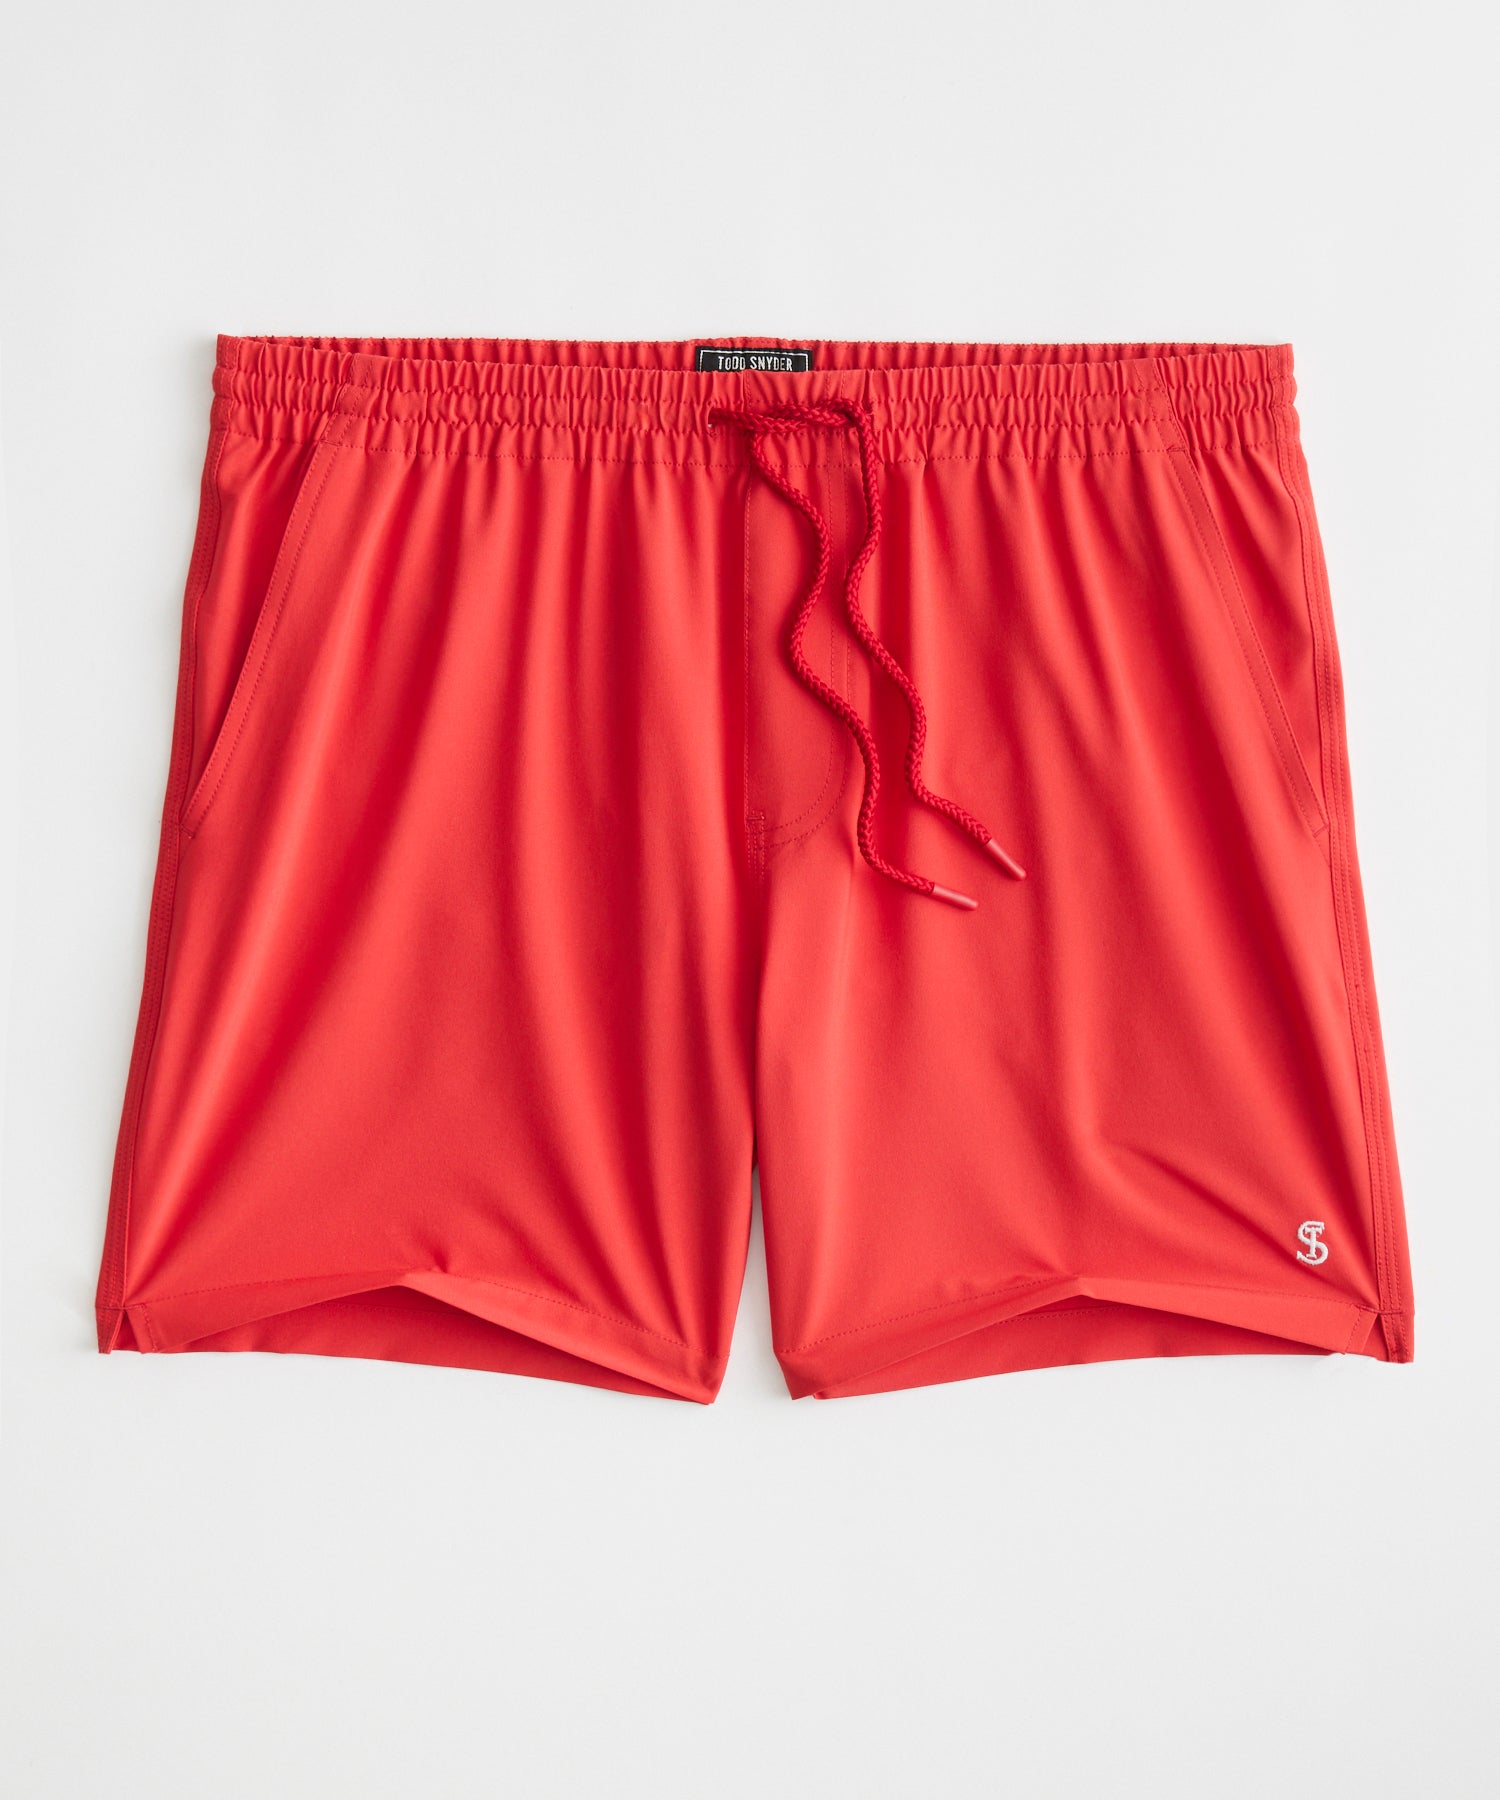 5" Montauk Swim Short in Fiery Red